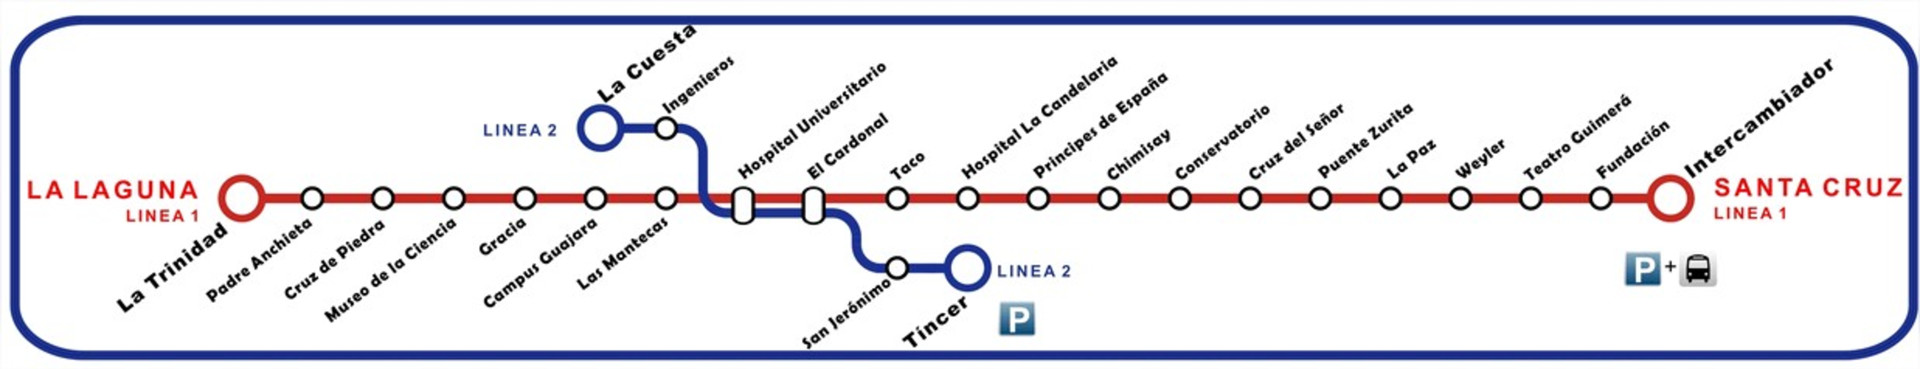 Tramway map